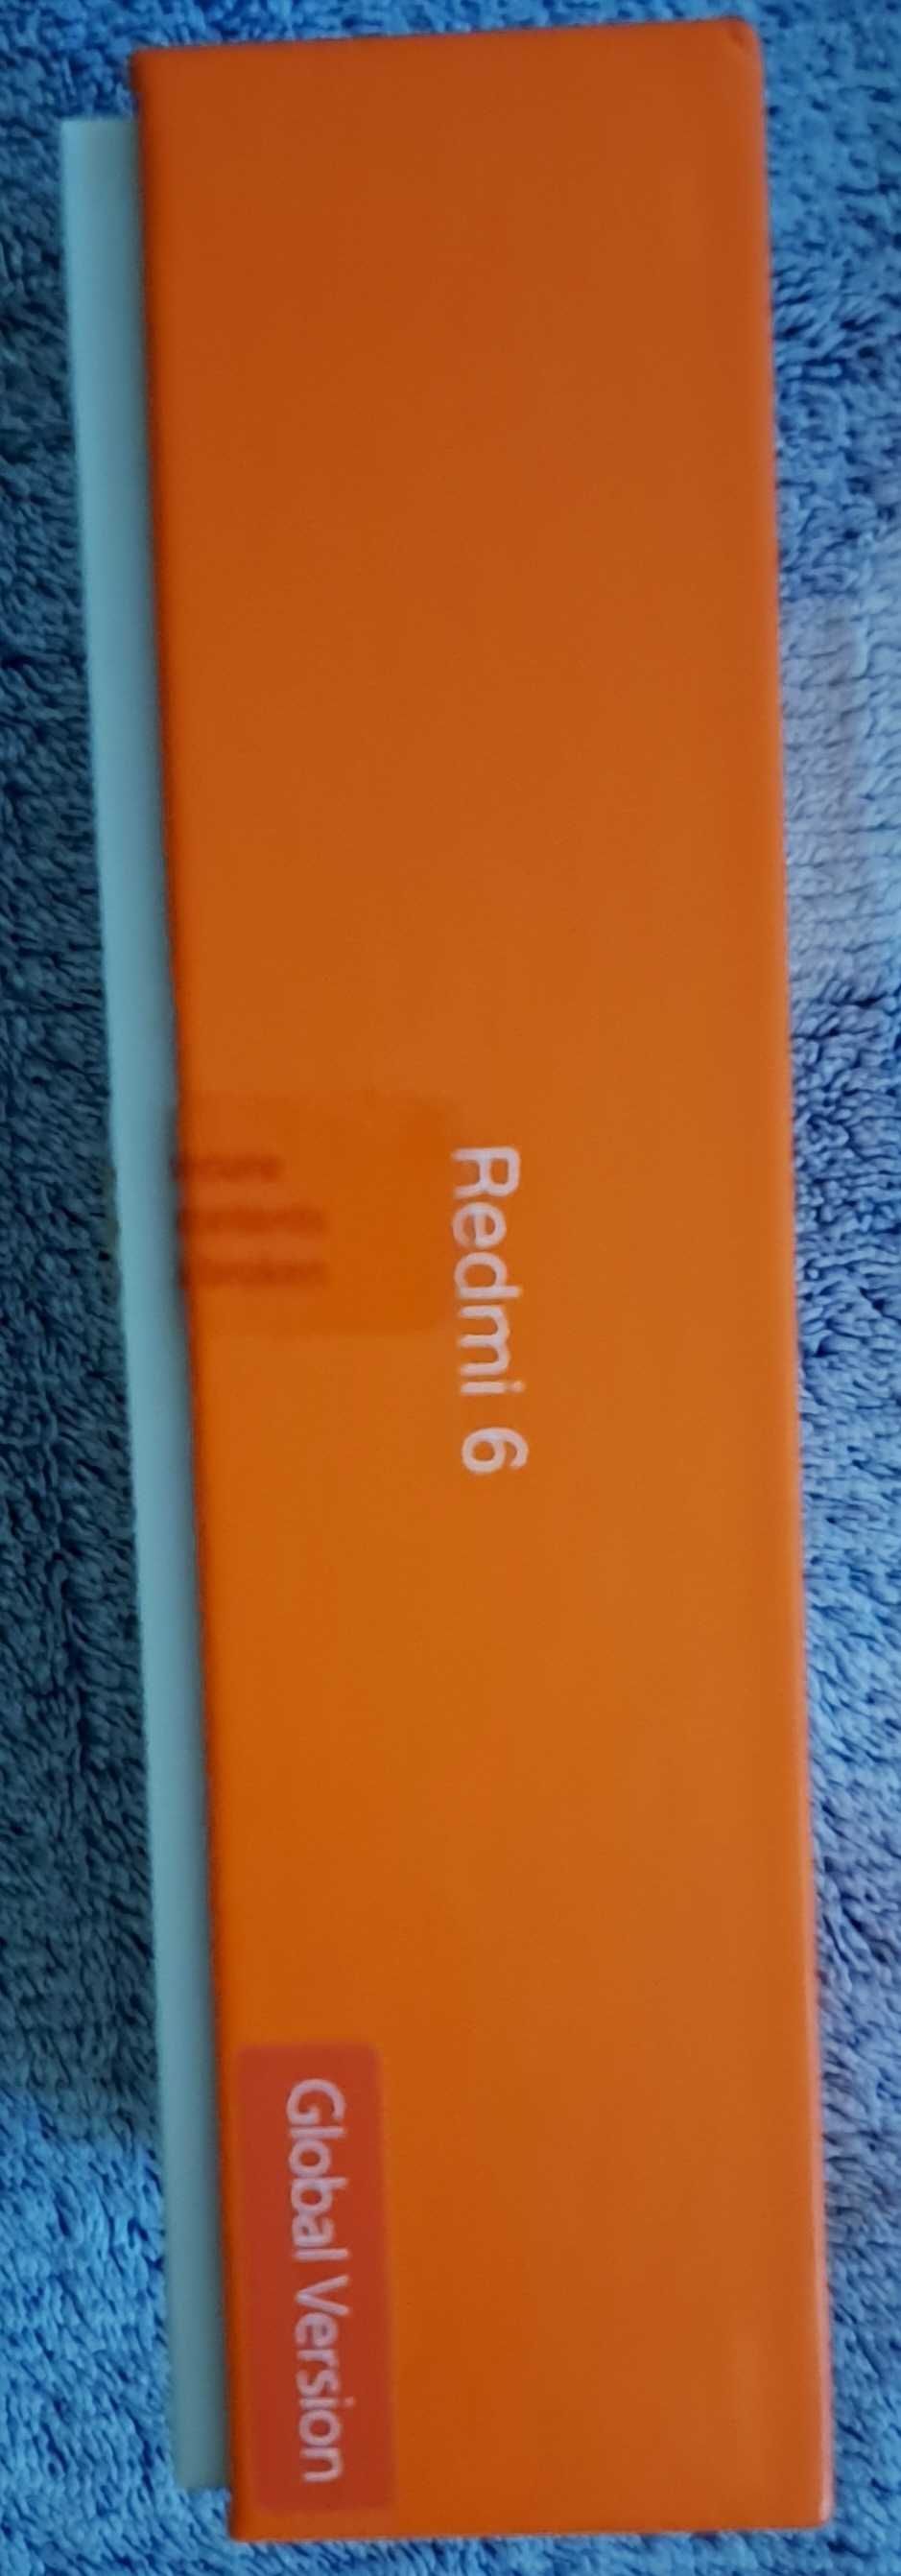 Pudełko z instrukcją do telefonu Xiaomi Redmi 6 Gold